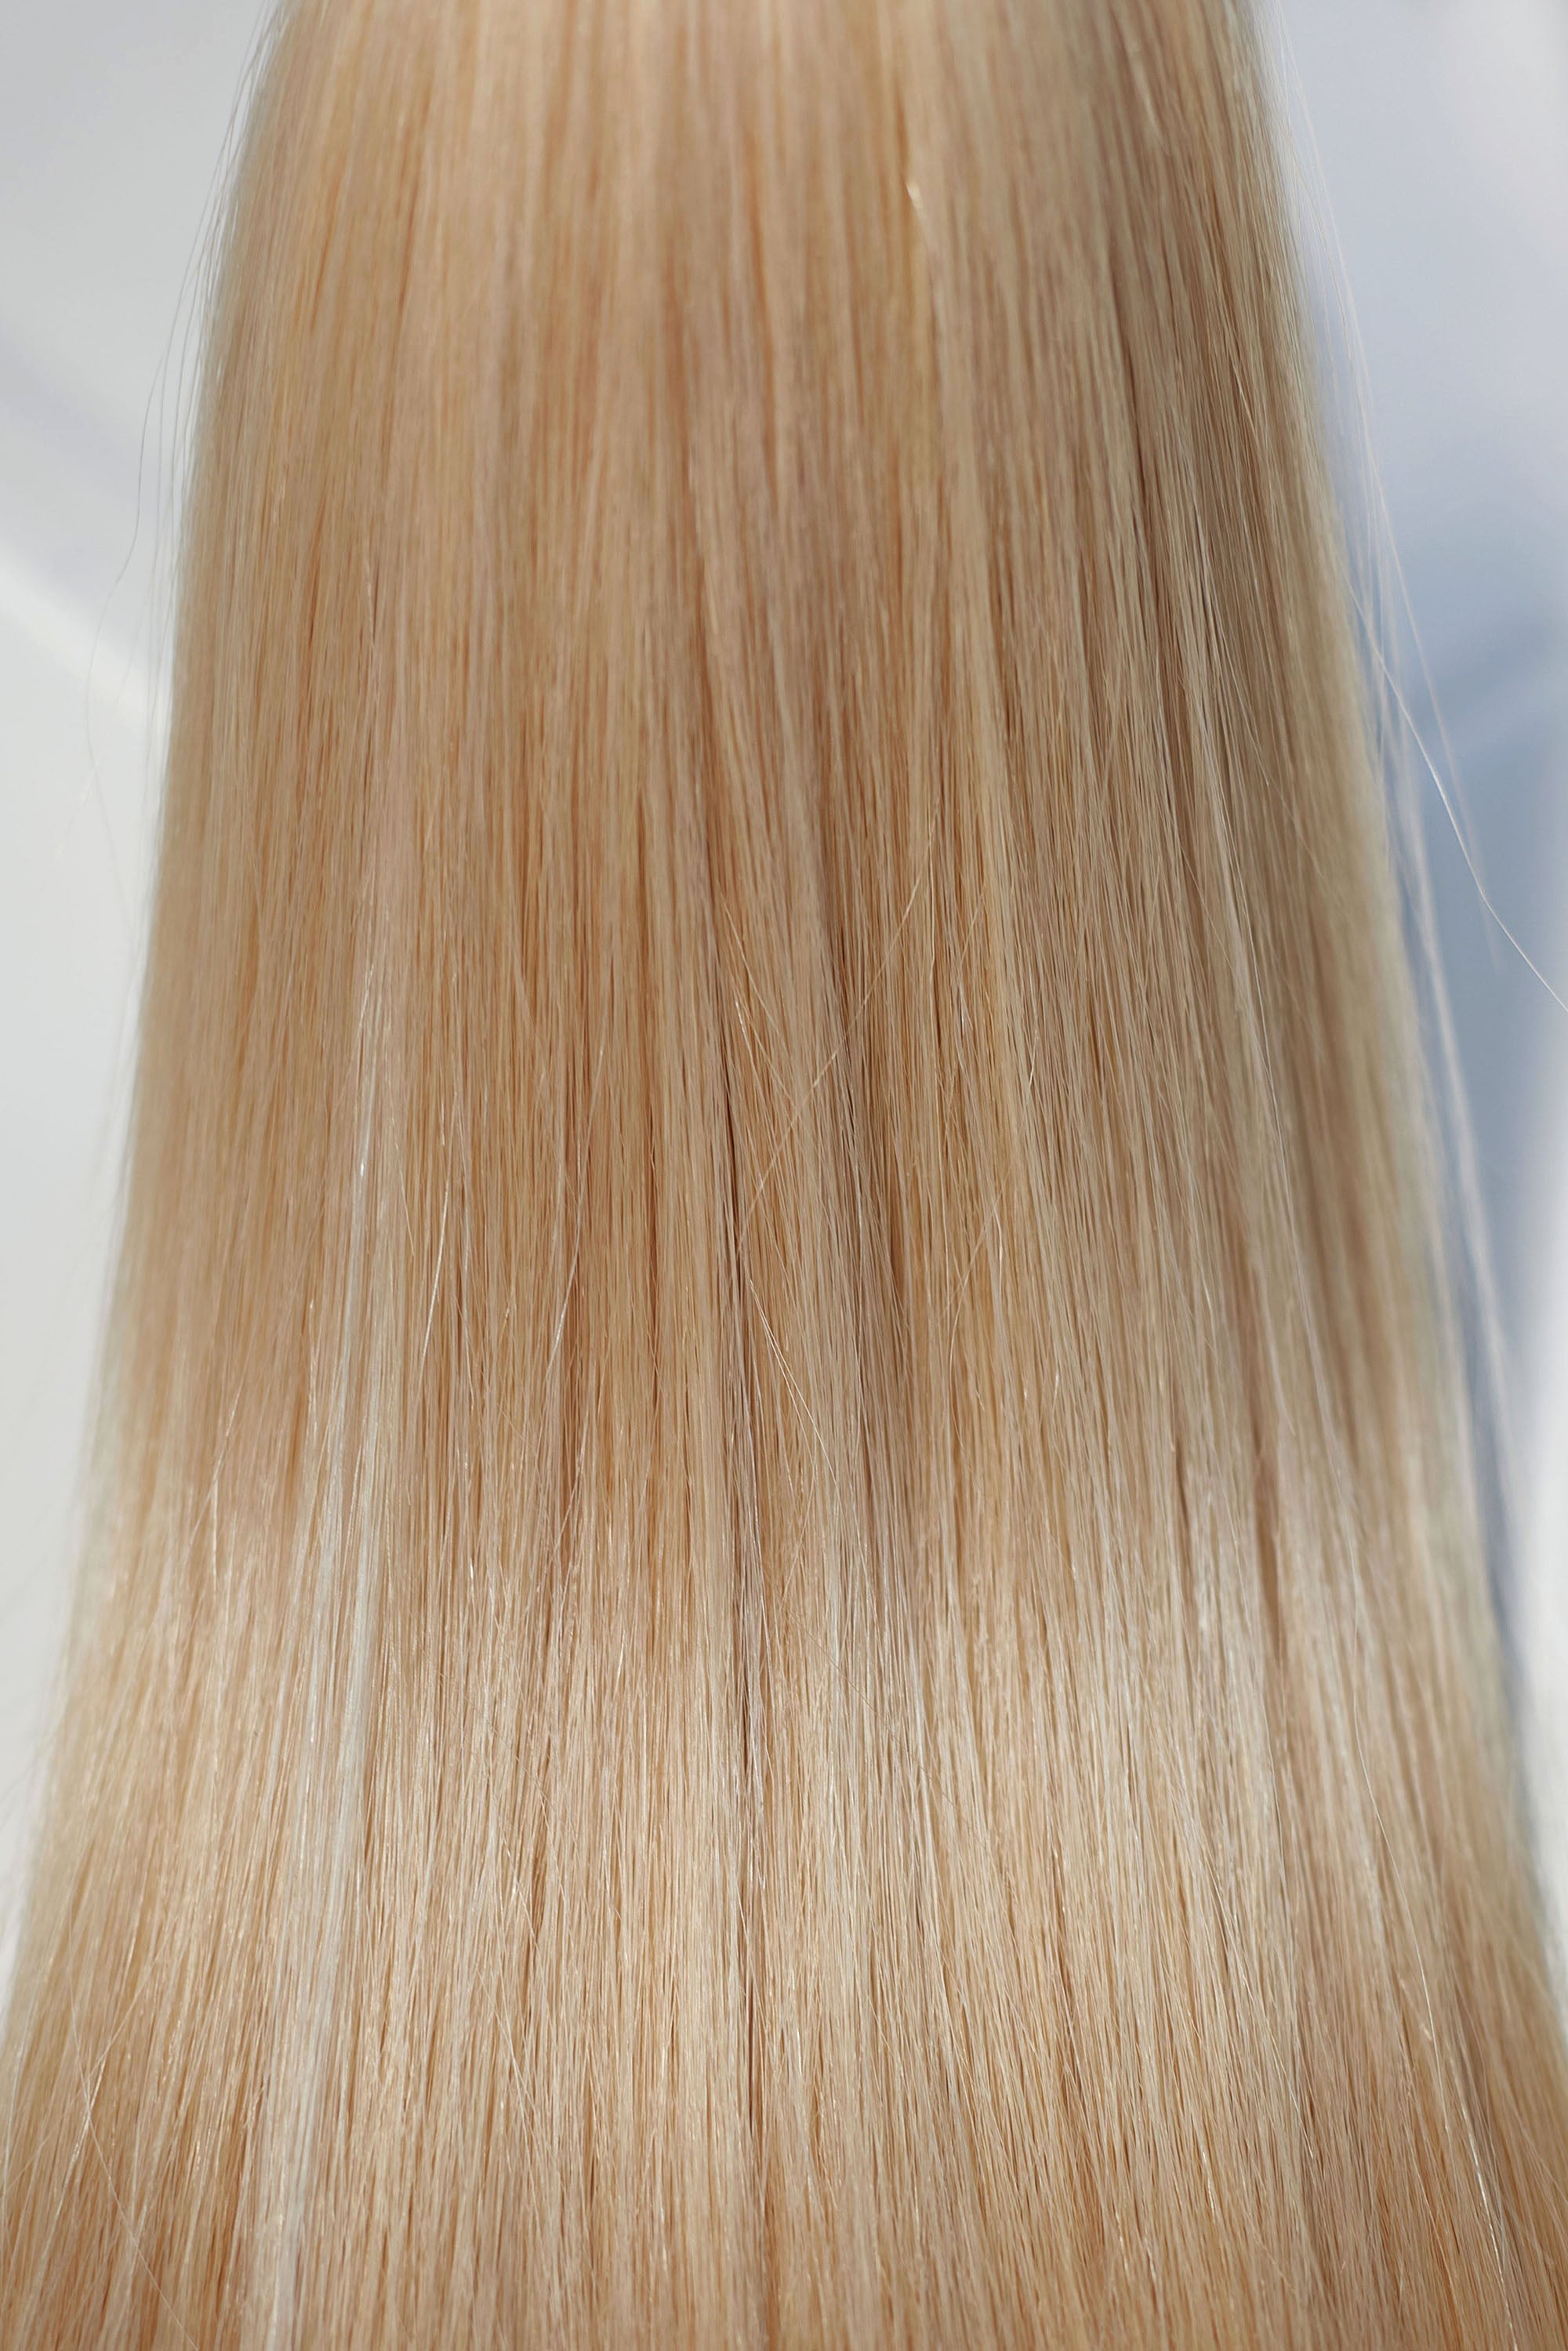 Behair professional Keratin Tip "Premium" 16" (40cm) Natural Straight Light Gold Blond #24 - 25g (Standart - 0.7g each pcs) hair extensions